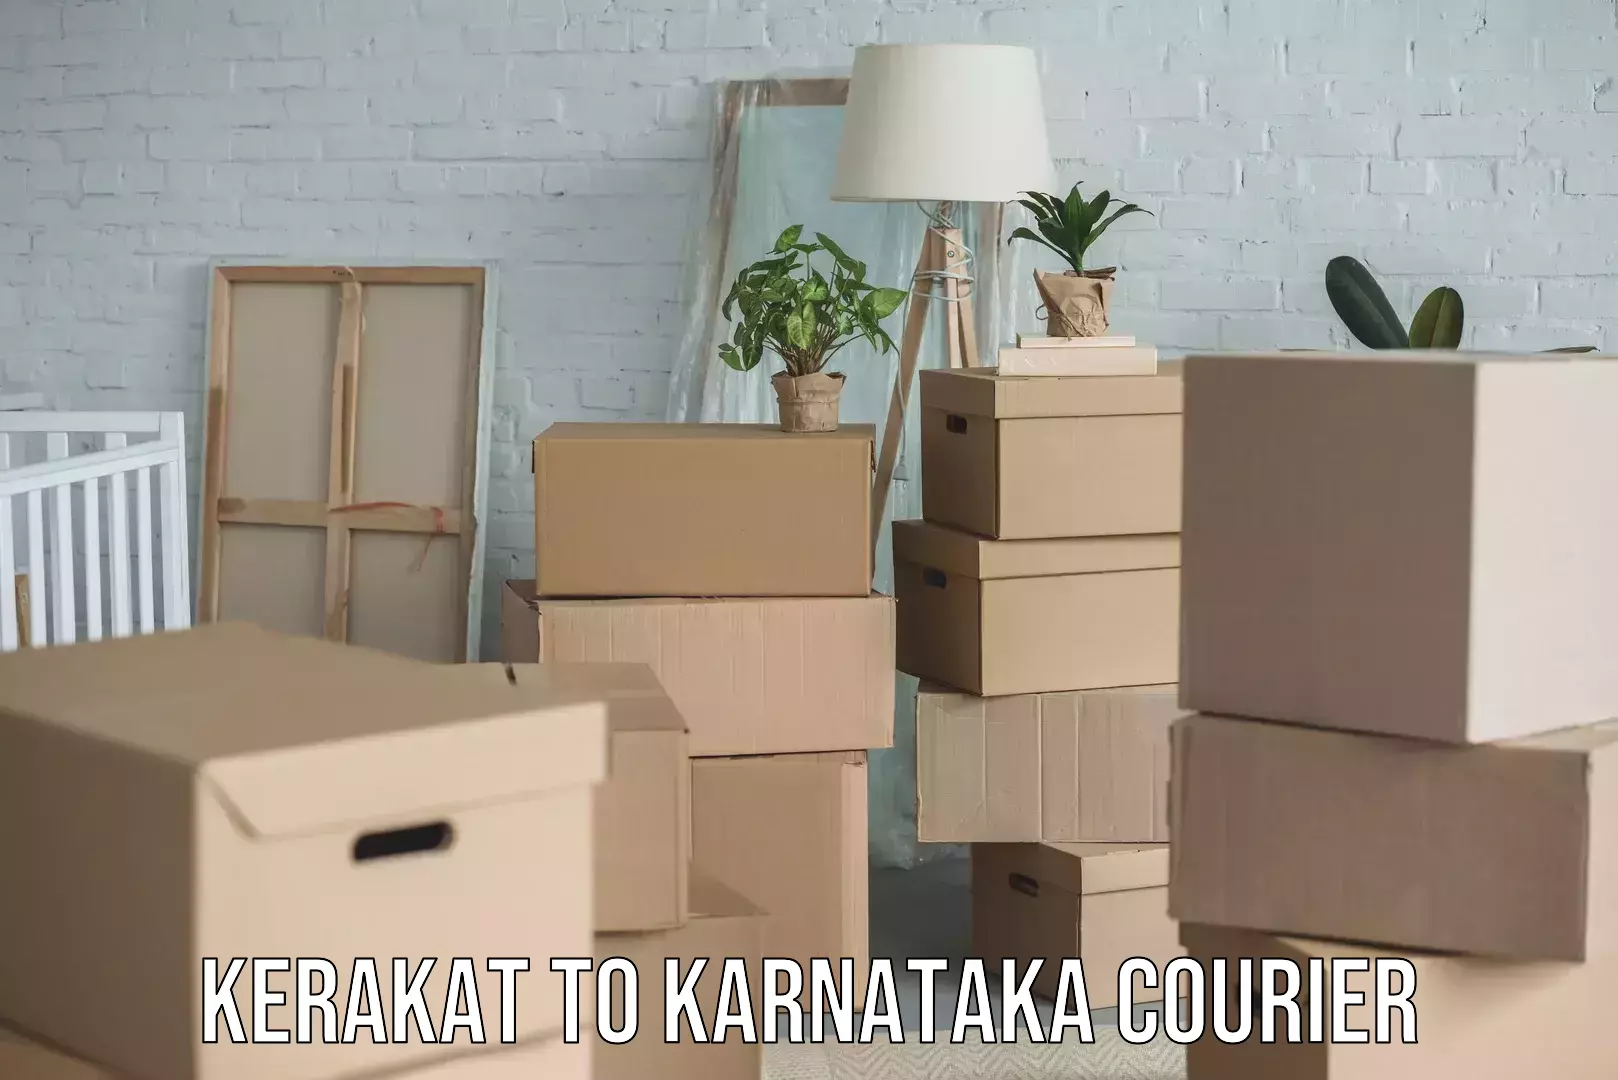 Professional furniture transport in Kerakat to Karnataka